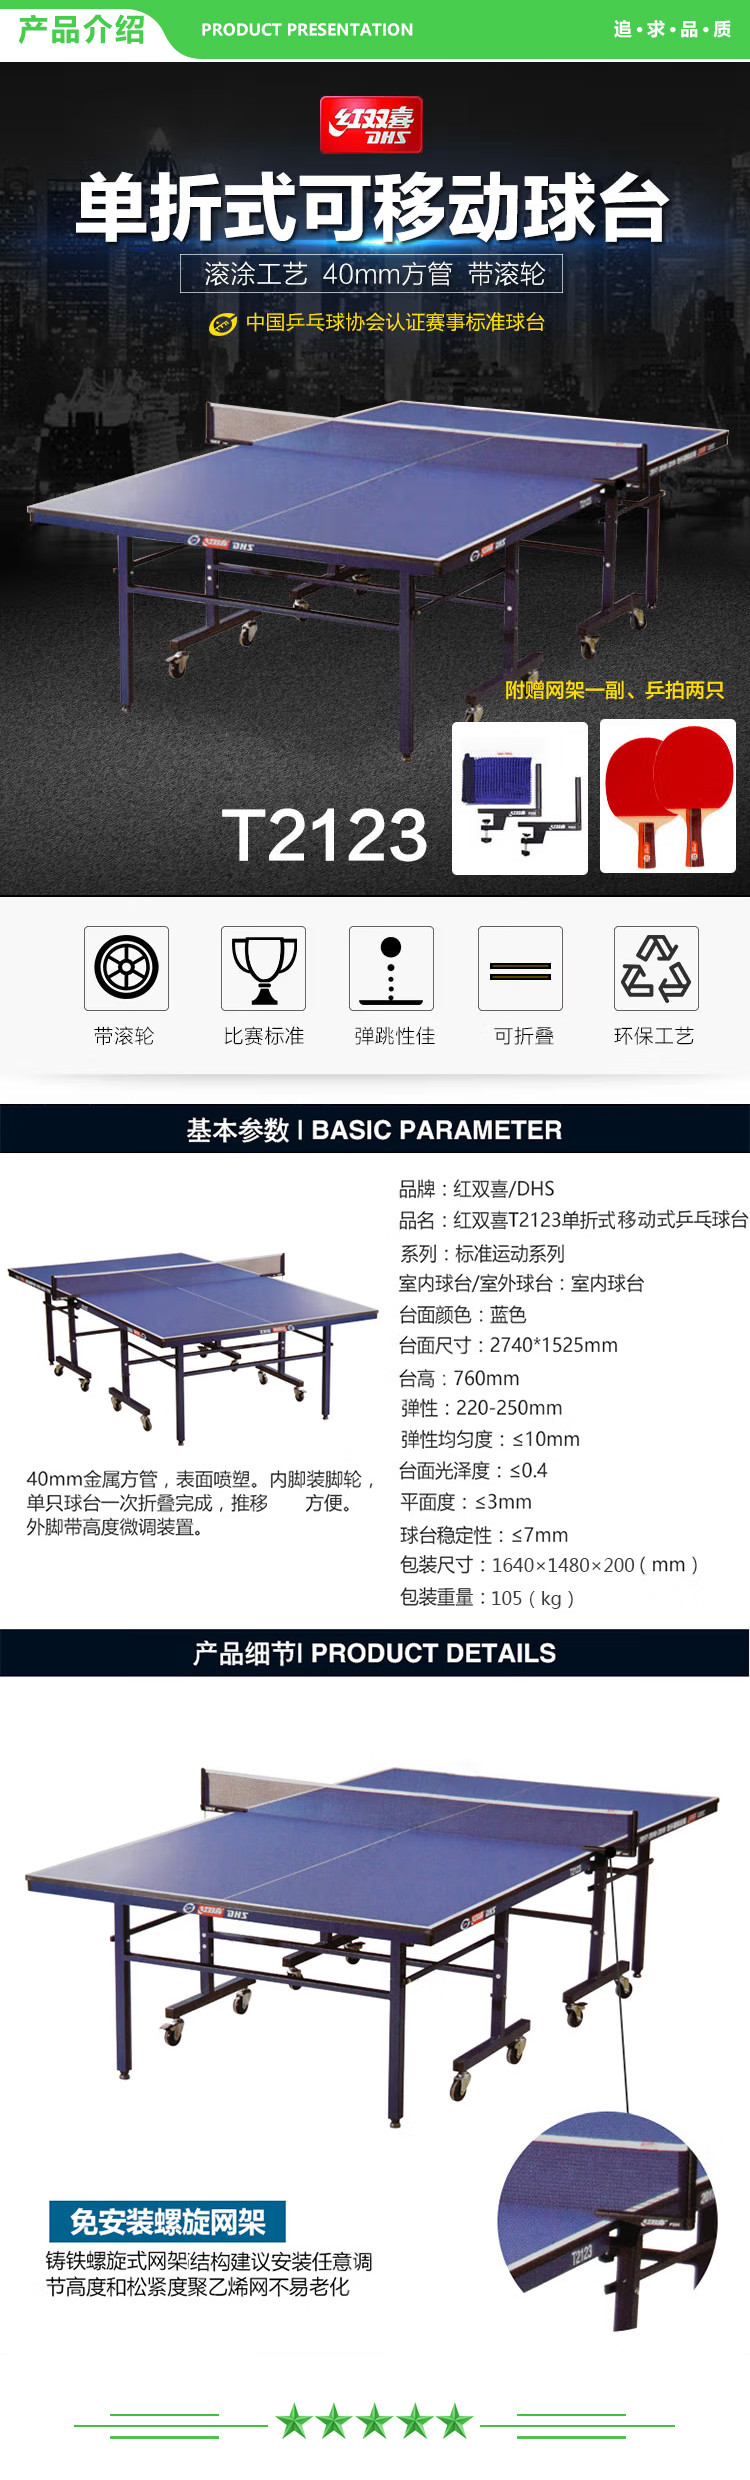 红双喜 DHS DXBC009-1(T2123) 乒乓球桌单折式室内乒乓球台训练比赛用乒乓球案子 含网架-球拍-乒乓球 .jpg